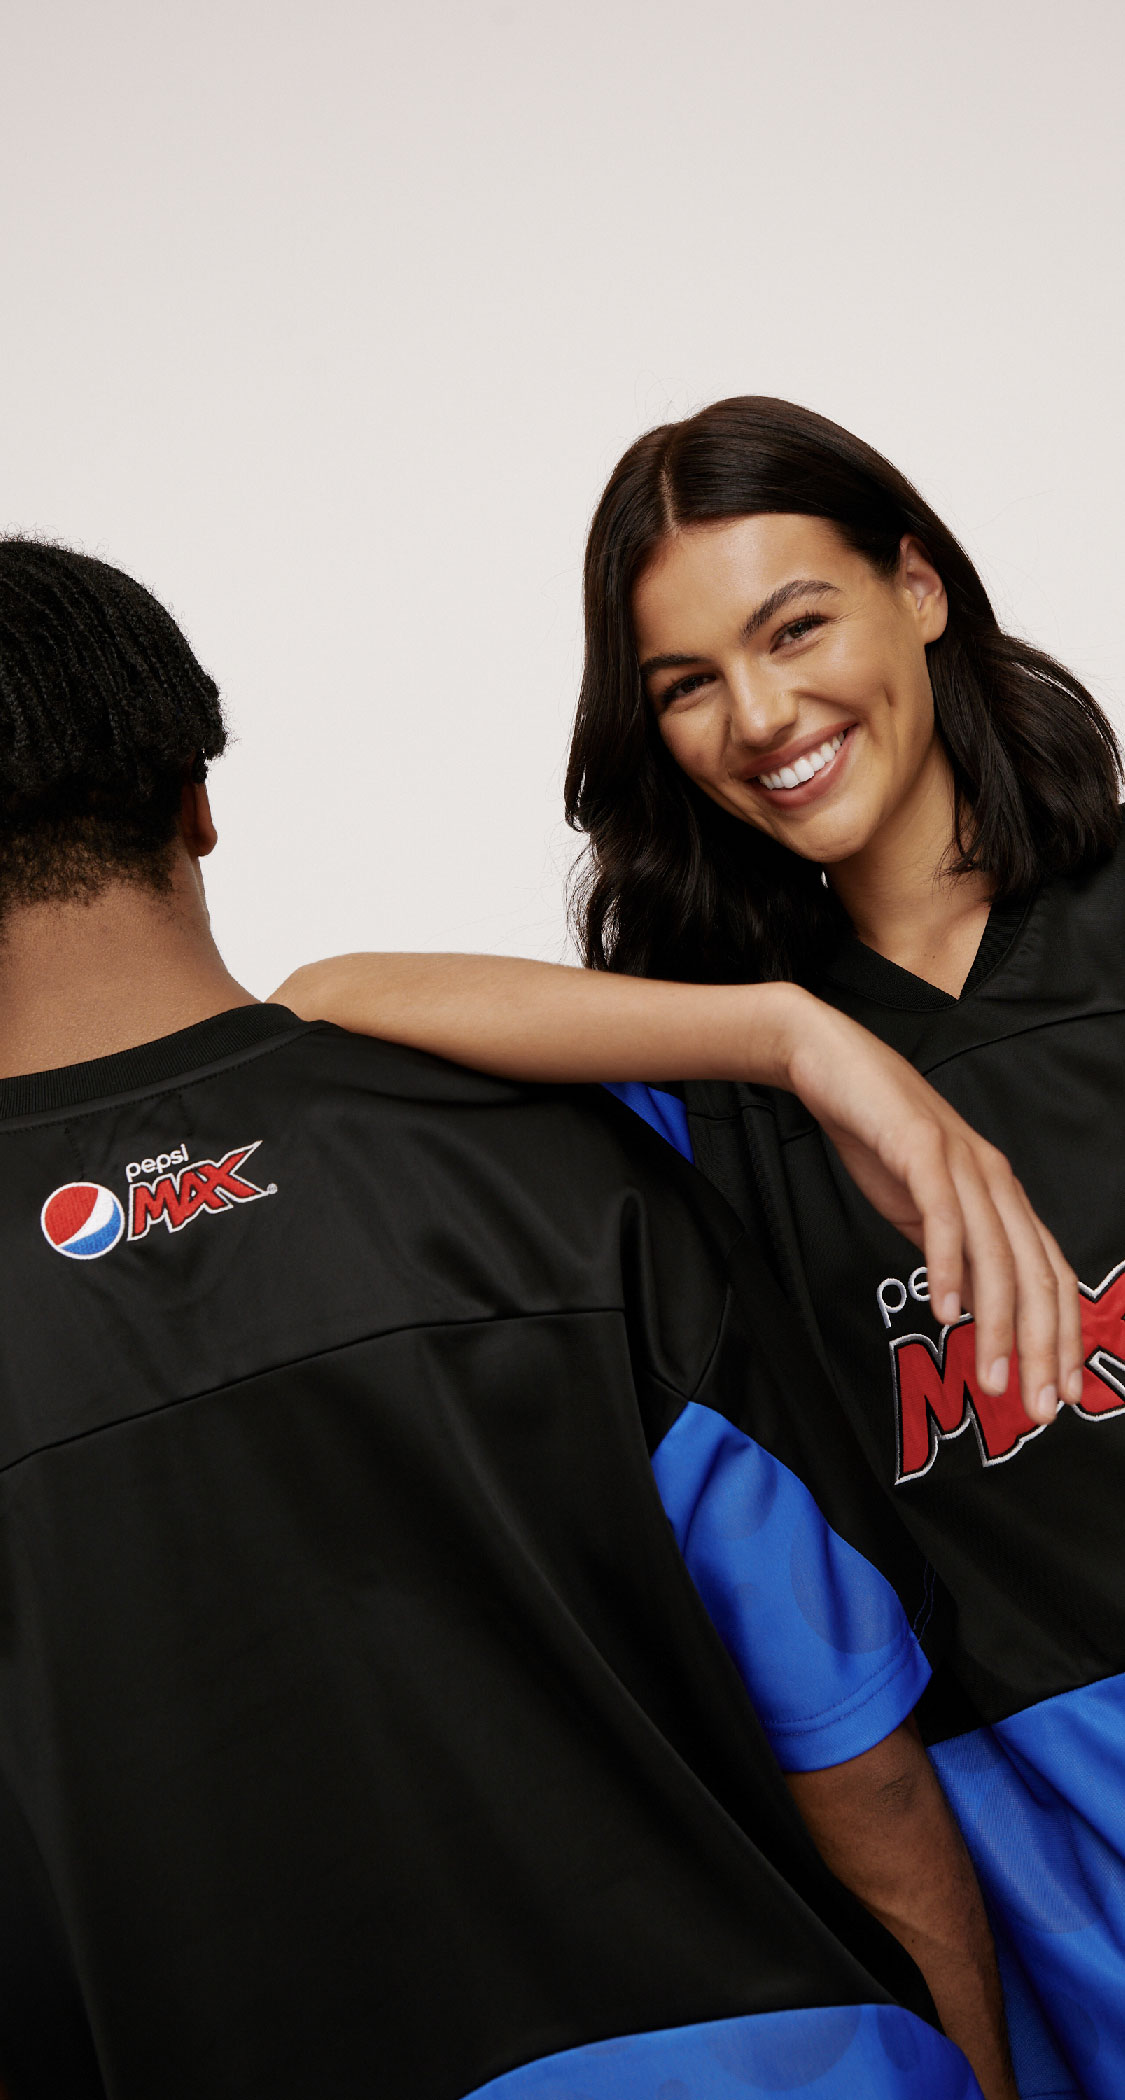 Pepsi Max Case study